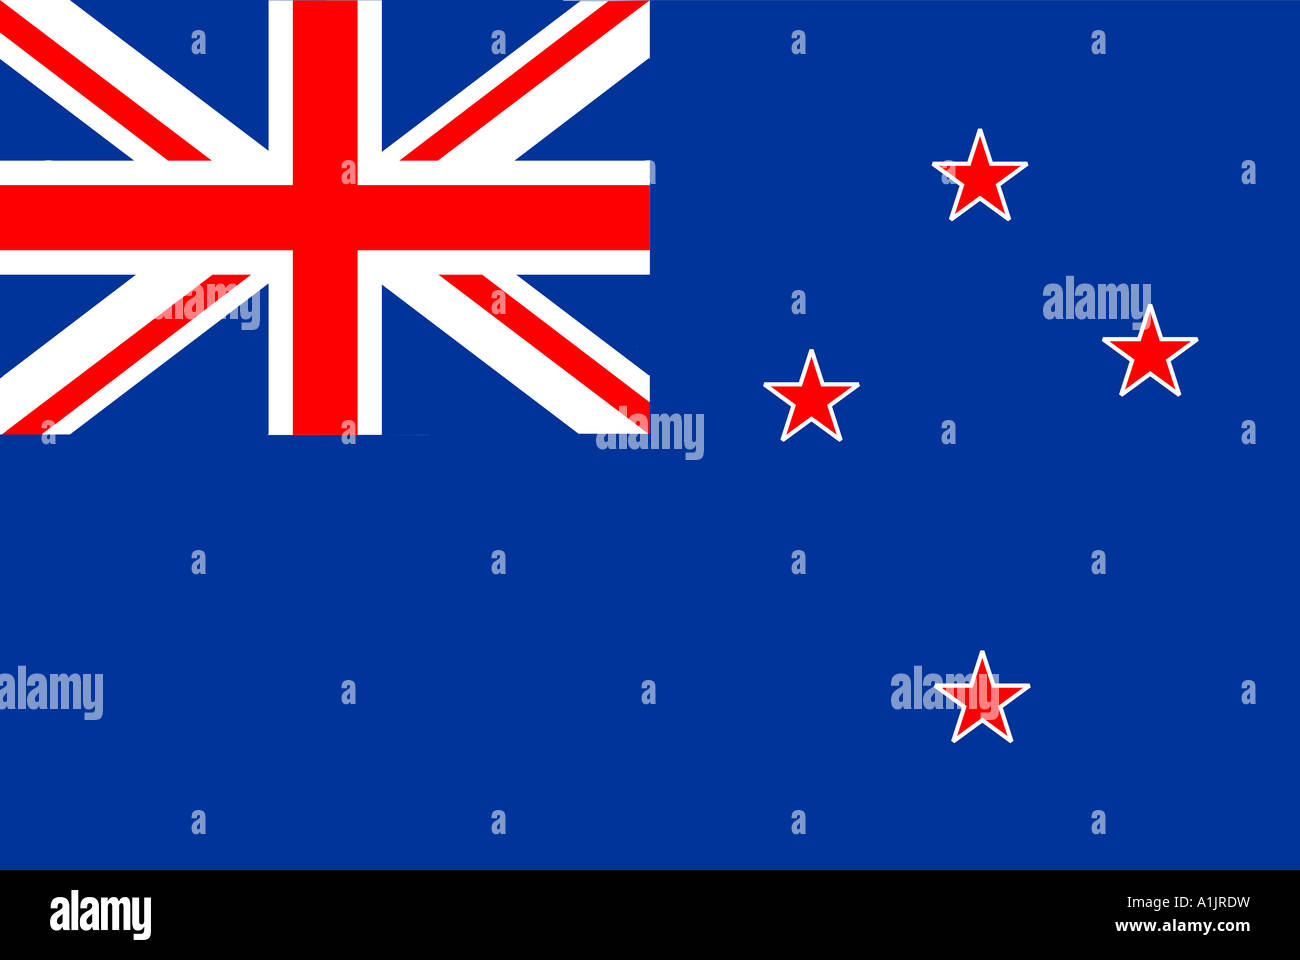 New Zealand national flag Stock Photo